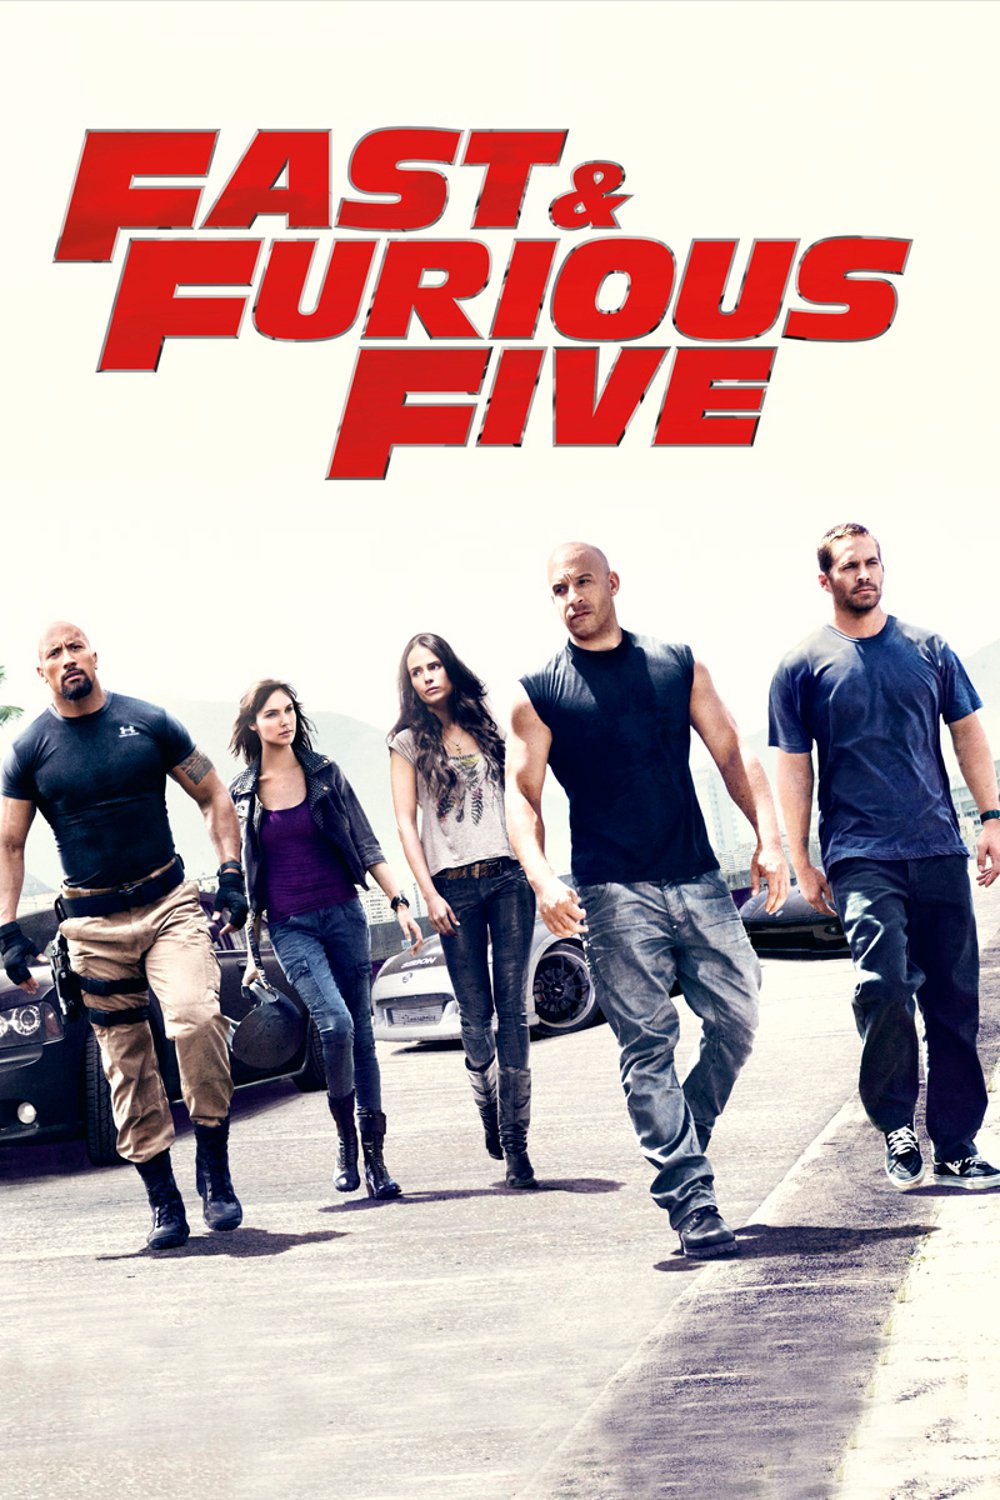 Plakat von "Fast & Furious Five"